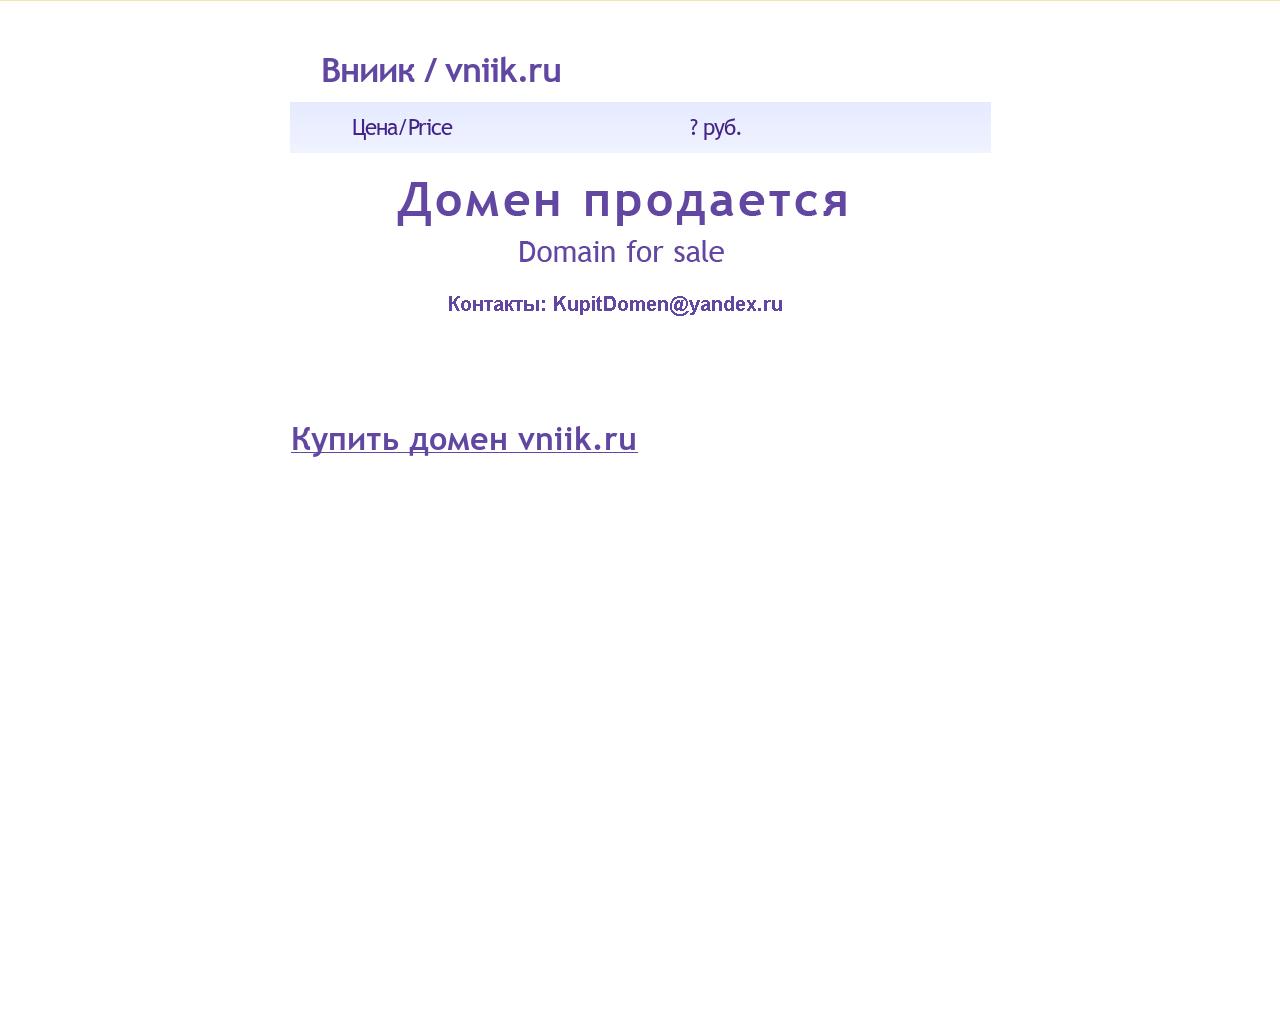 Изображение сайта vniik.ru в разрешении 1280x1024